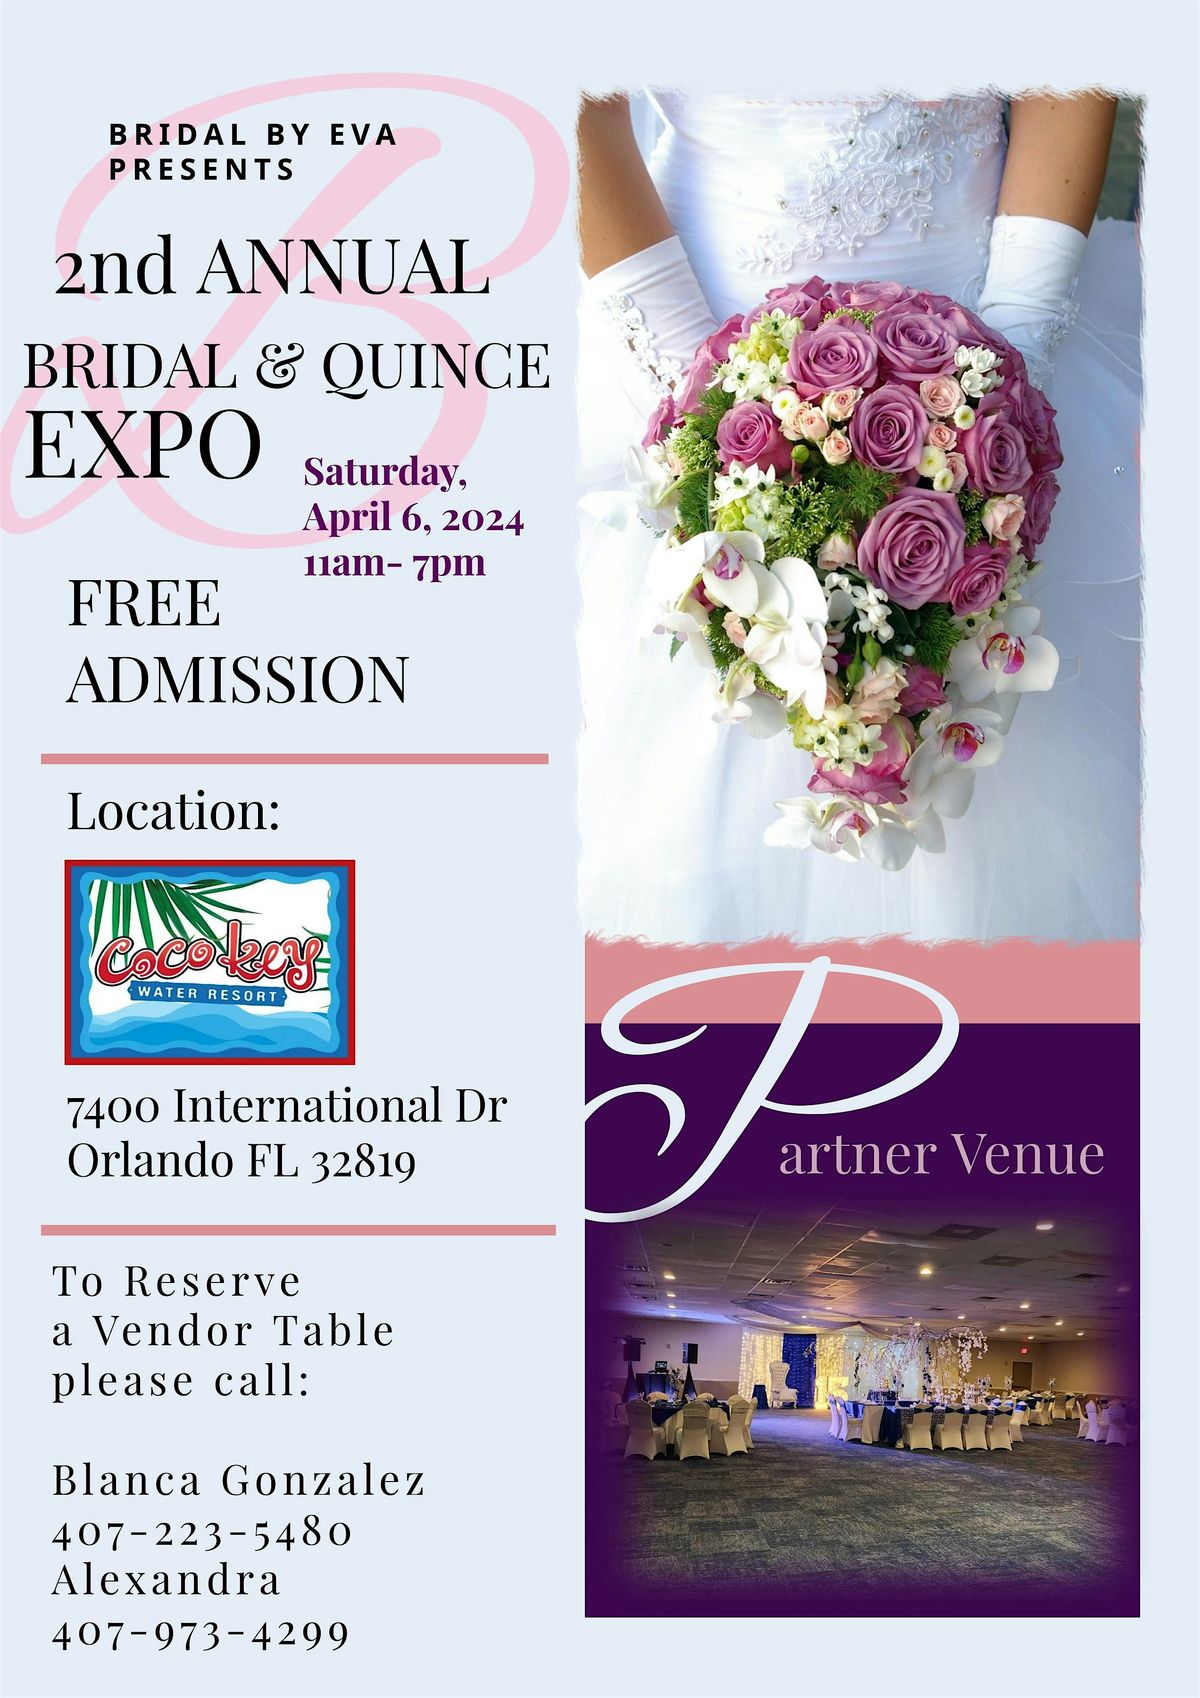 2th Annual Bridal & Quince Expo - Orlando